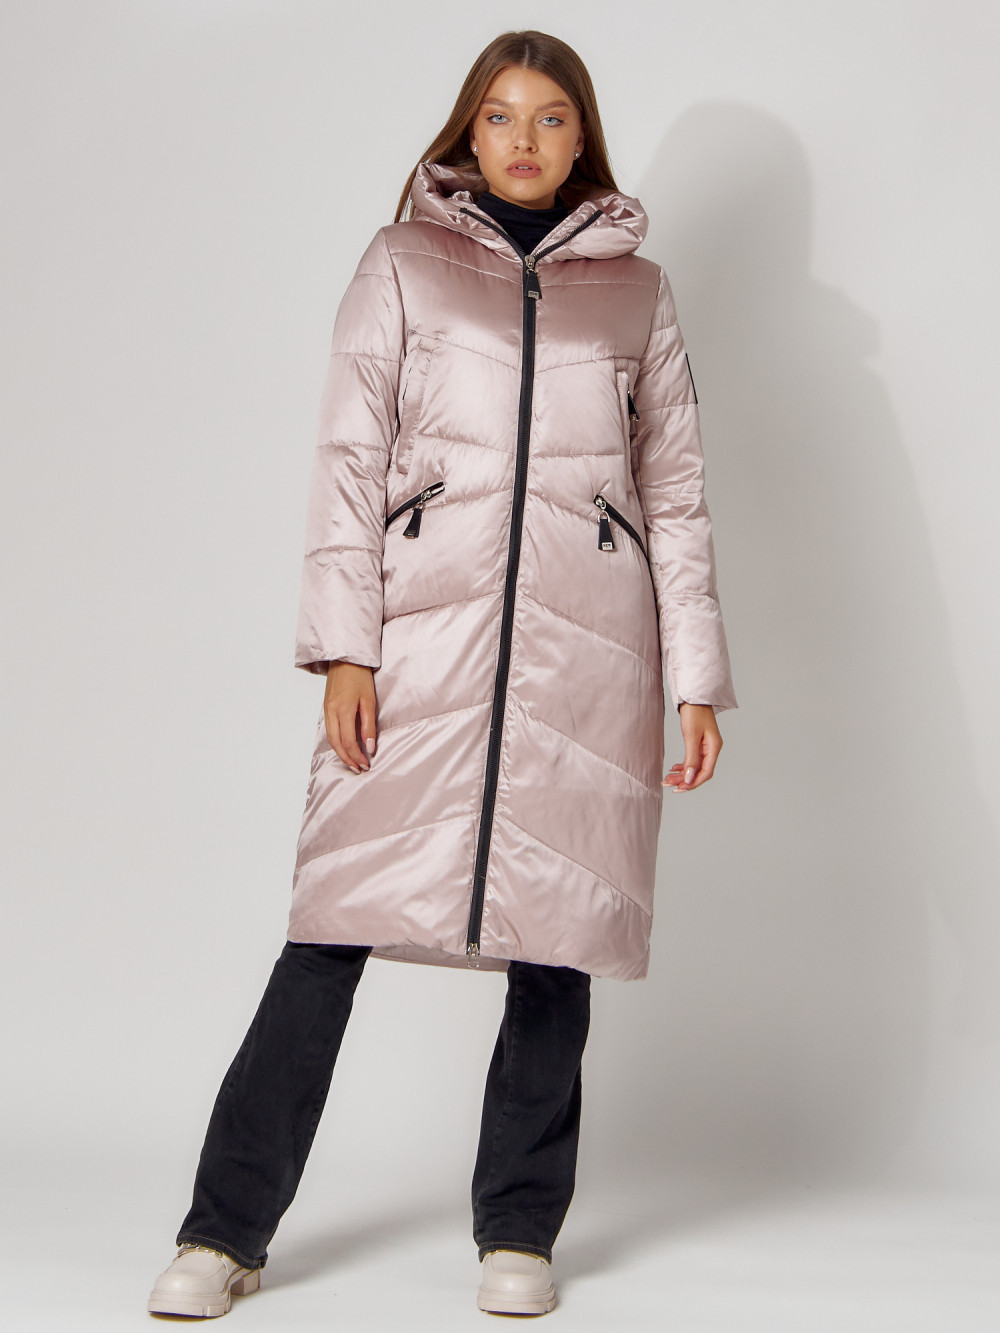 Куртка женская MTFORCE 442152 розовая XL - купить в Москве, цены наМегамаркет